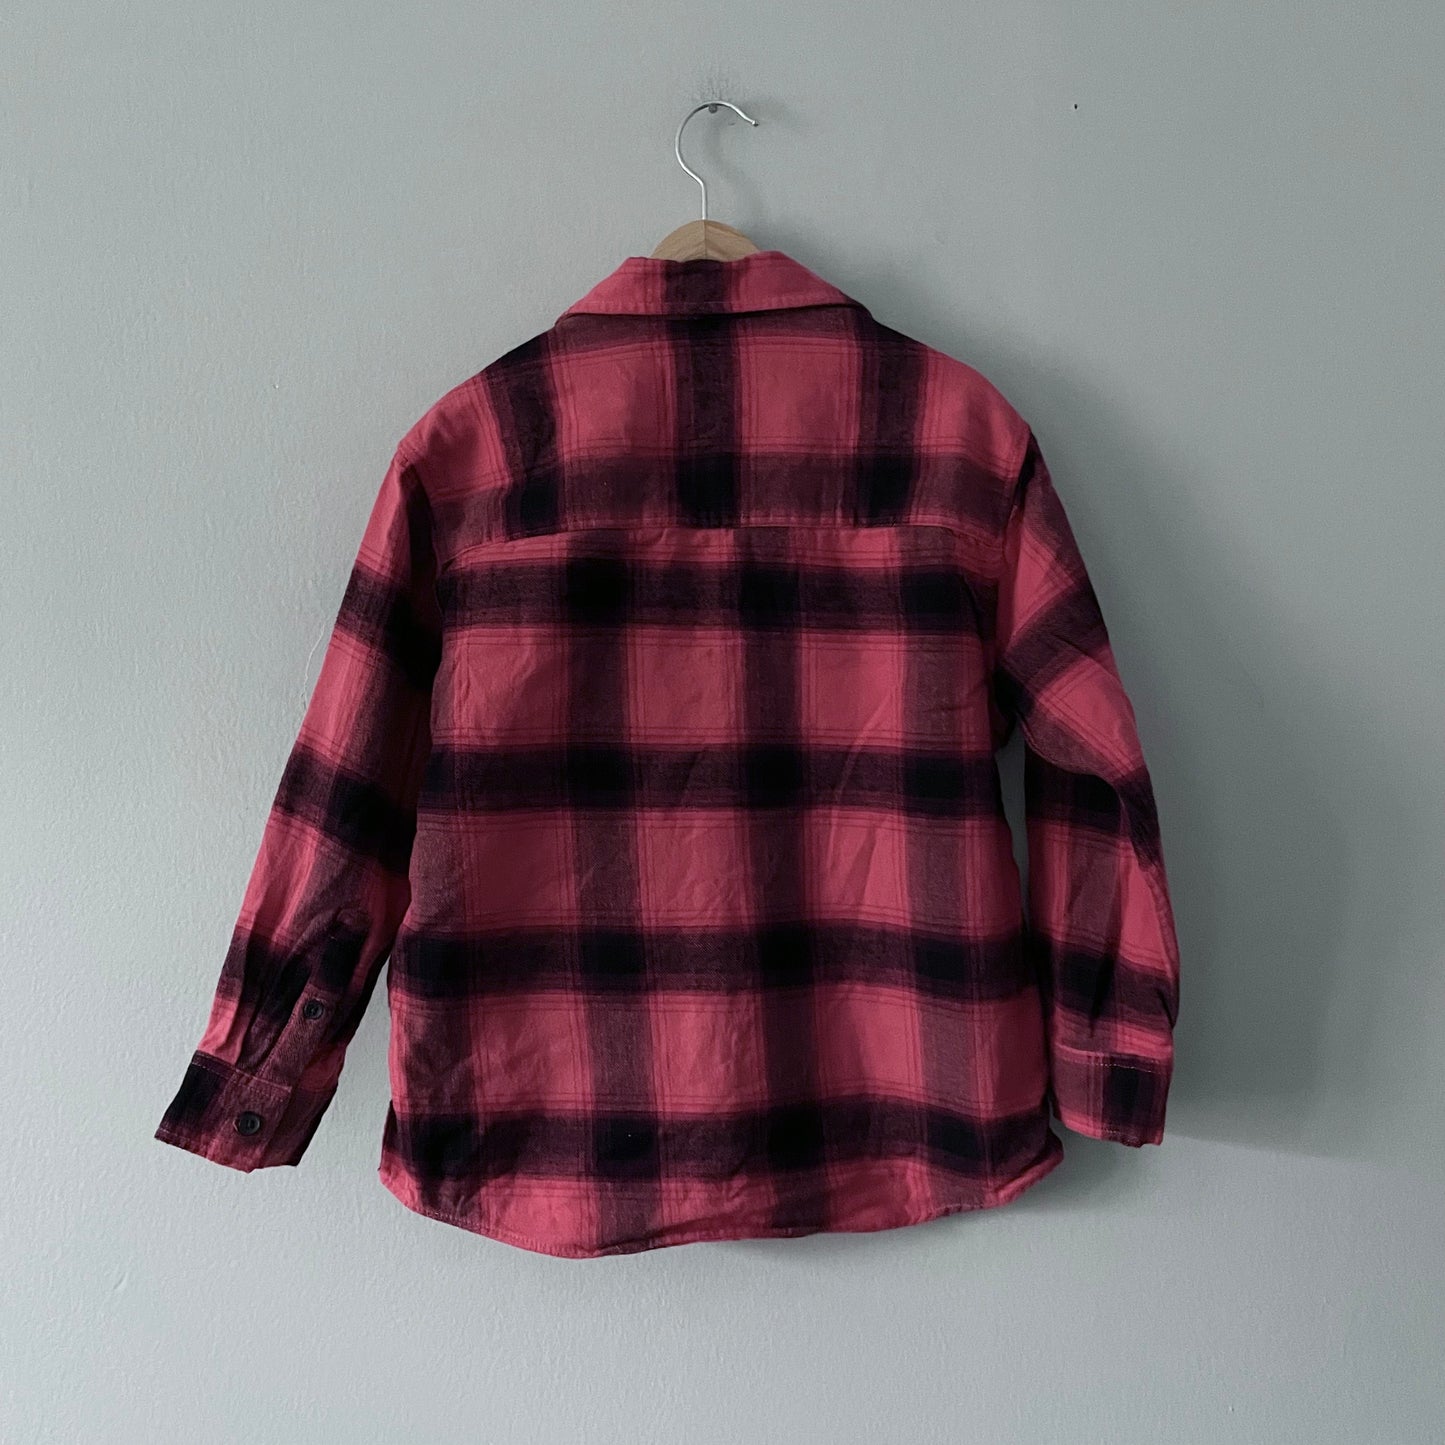 Zara / Red x black flannel shirt / 6Y